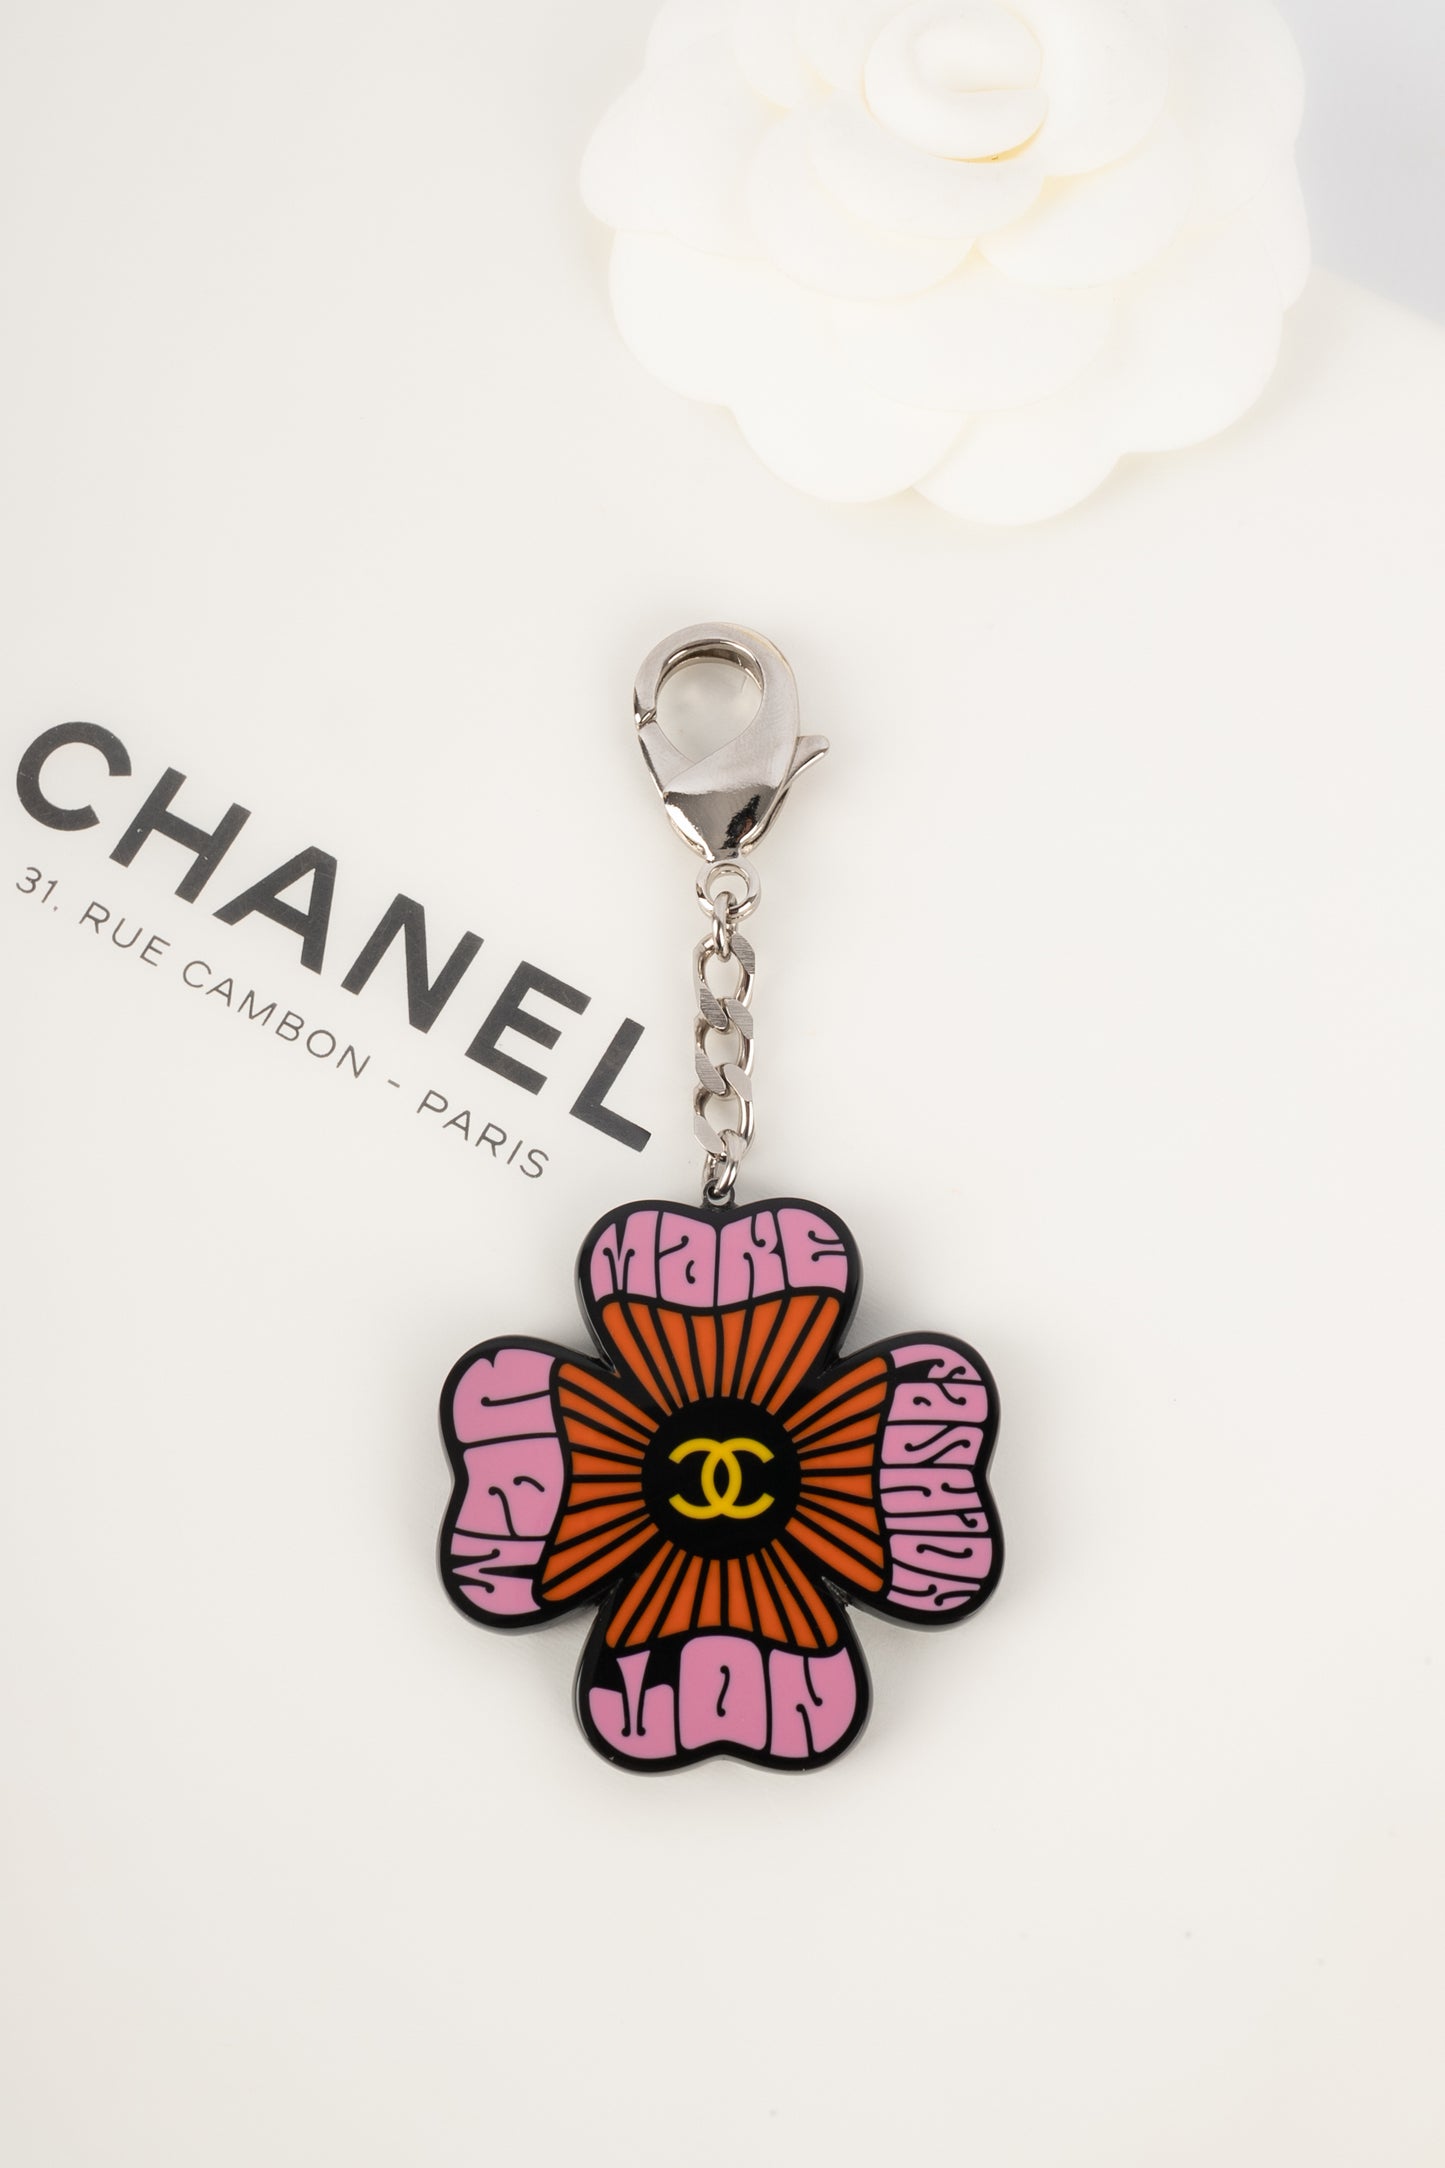 Porte clé Chanel 2015